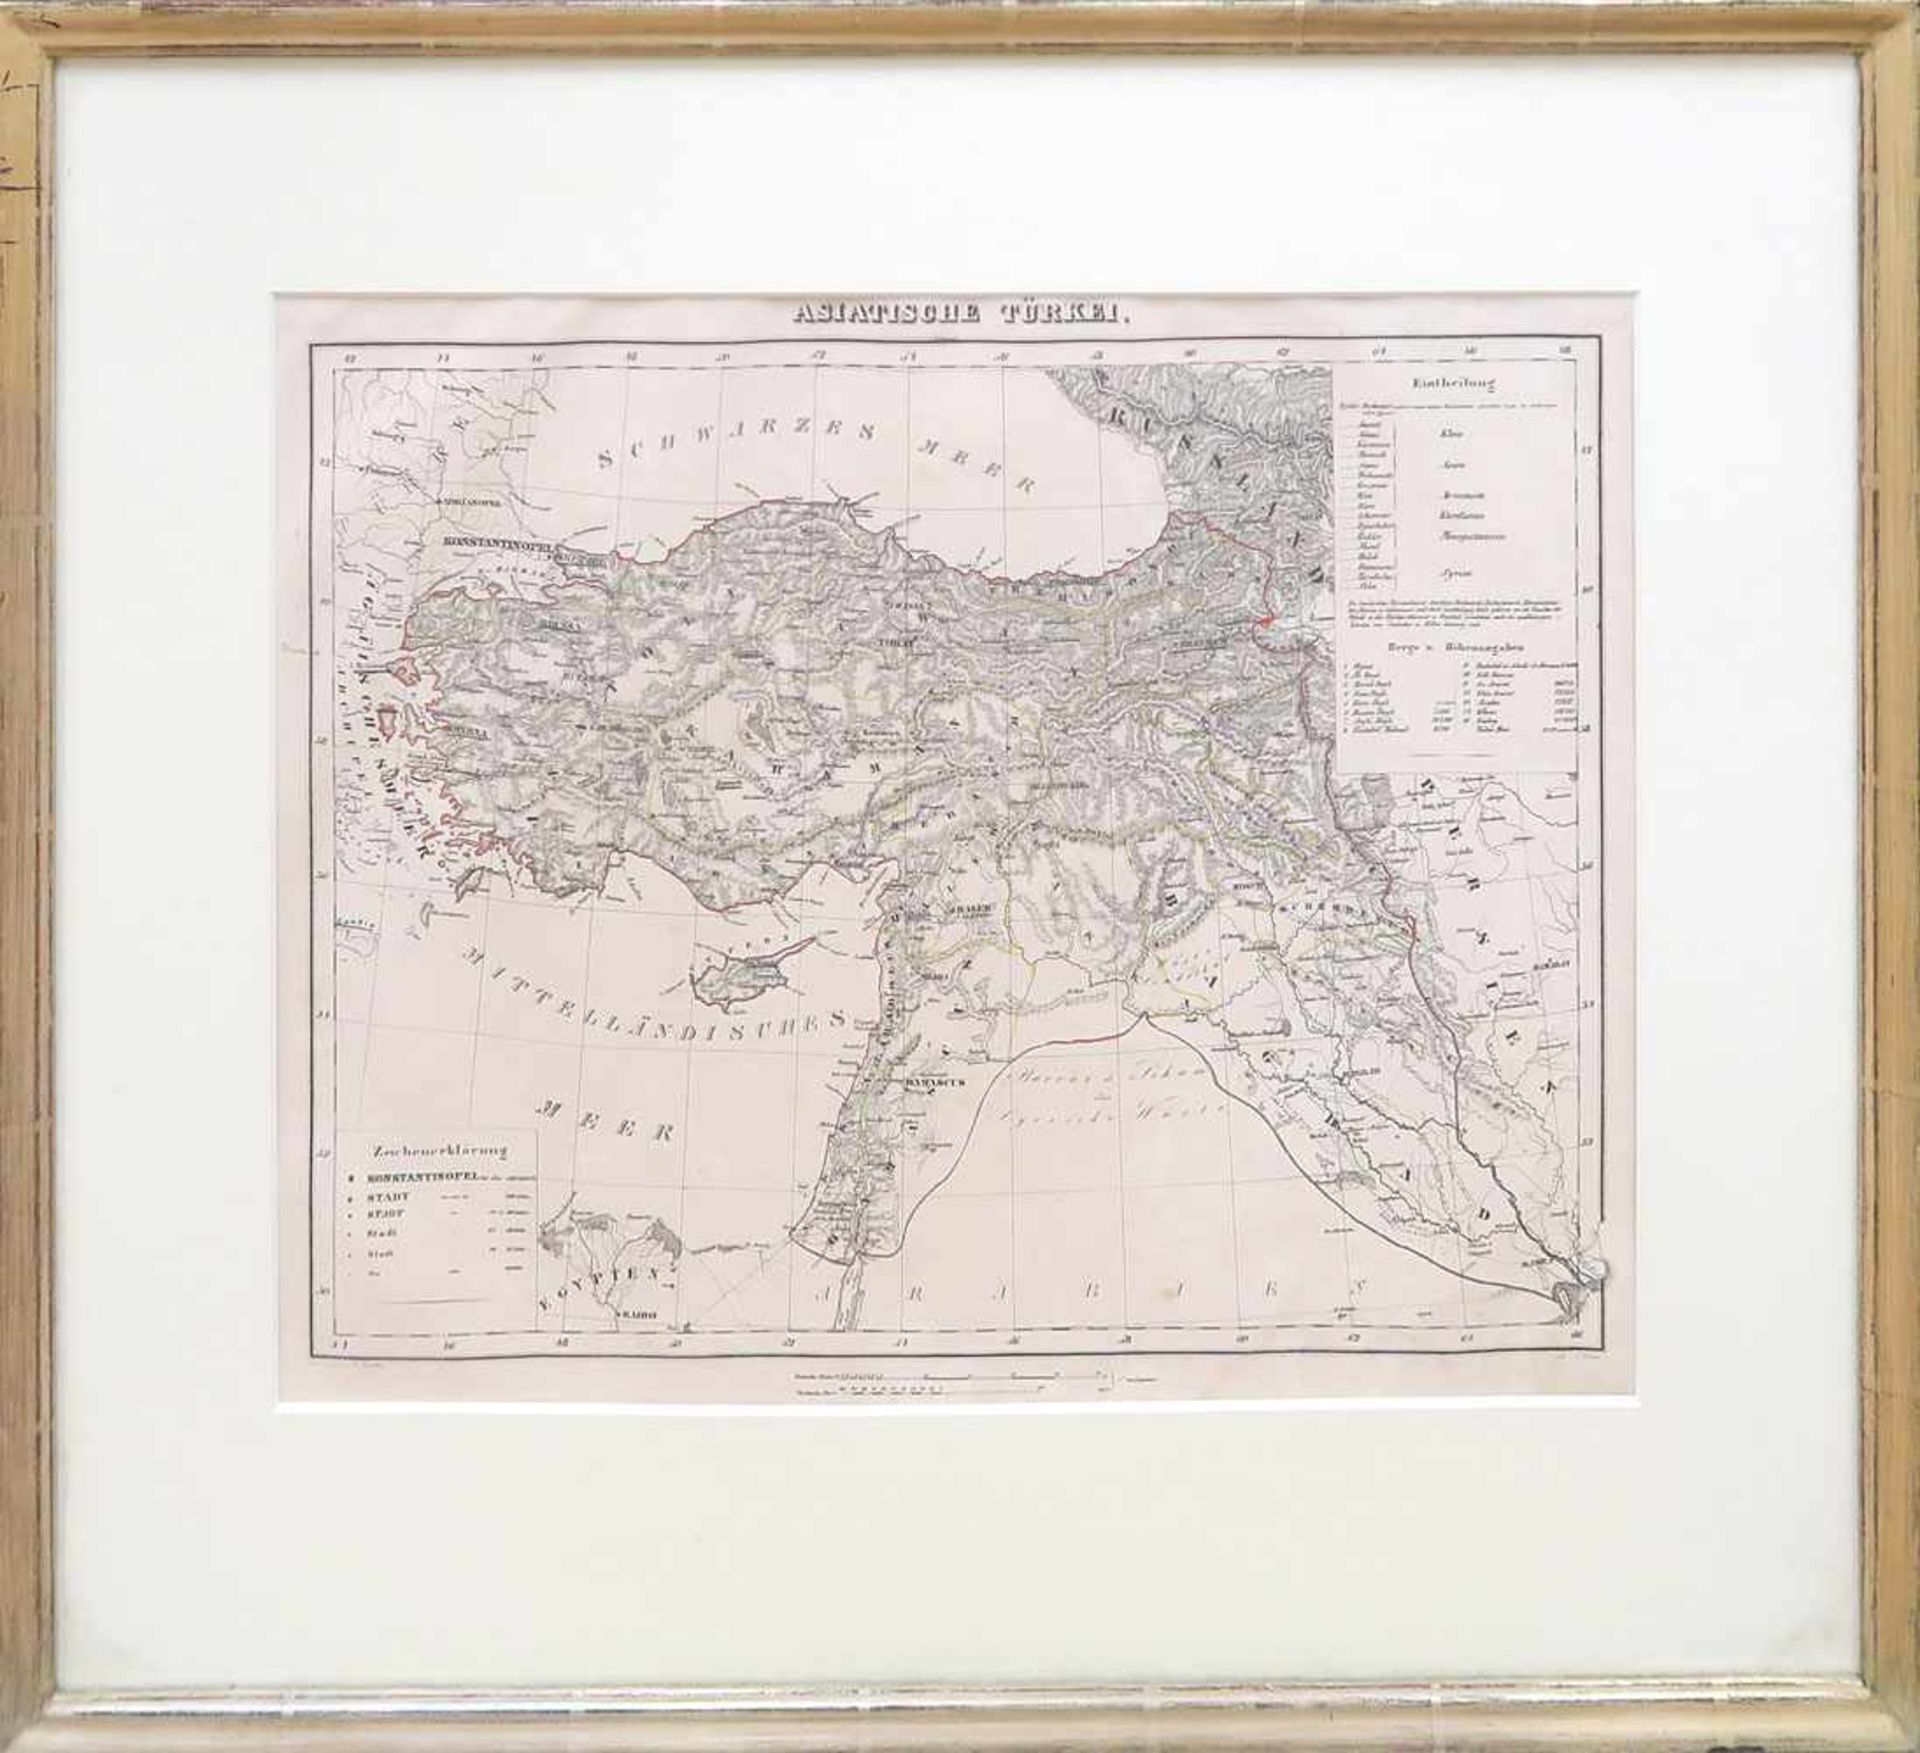 Handtke, Friedrich 1815 Pförten - 1879 Glogau Karte "Asiatische Türkei" Radierung, tlw. koloriert. - Image 2 of 2